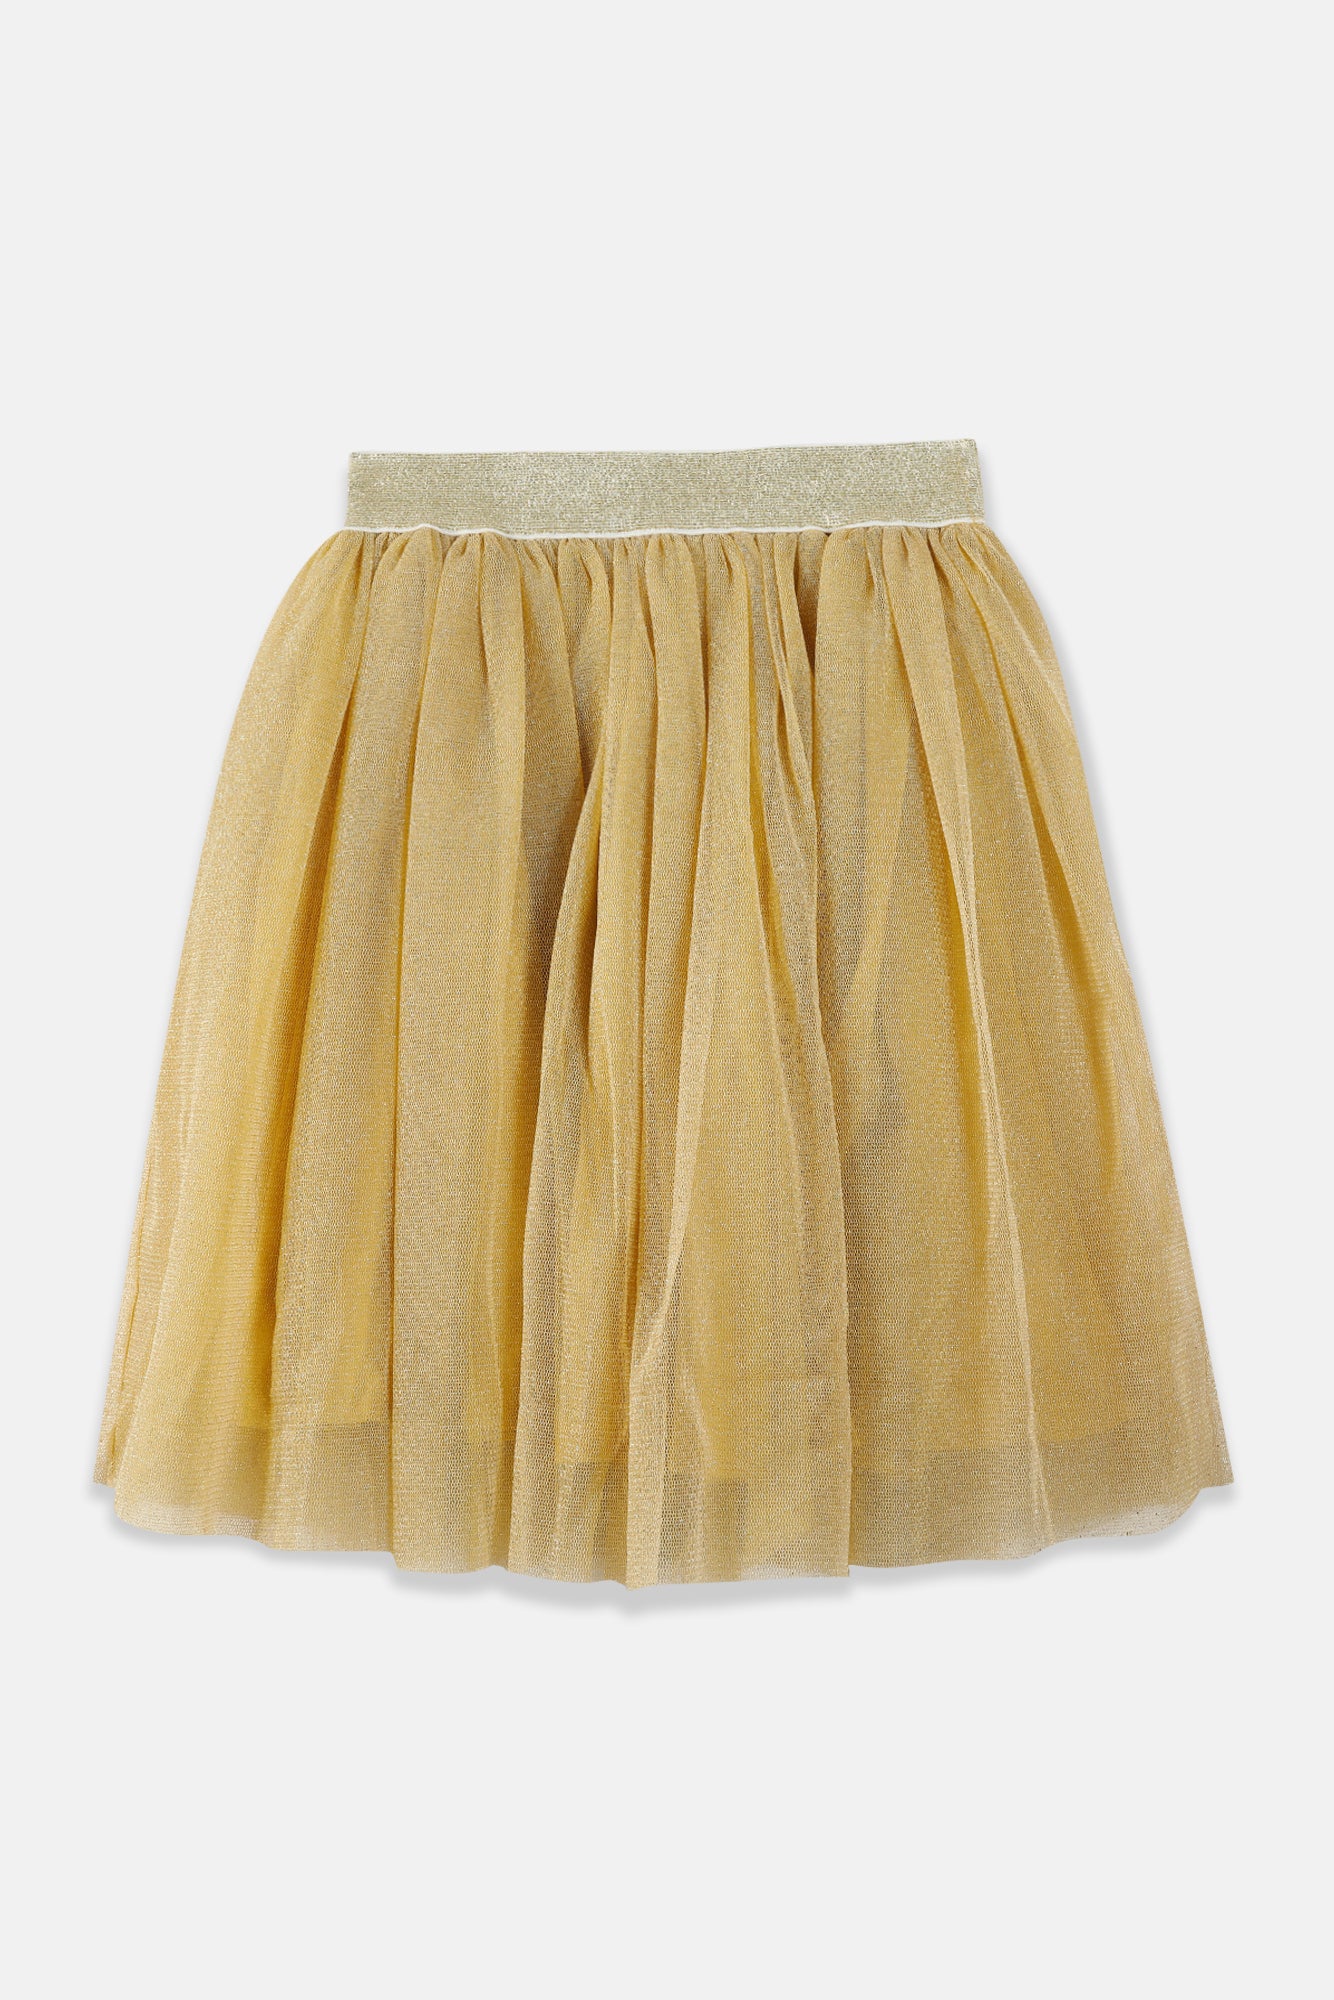 Skirt - Tulle gold